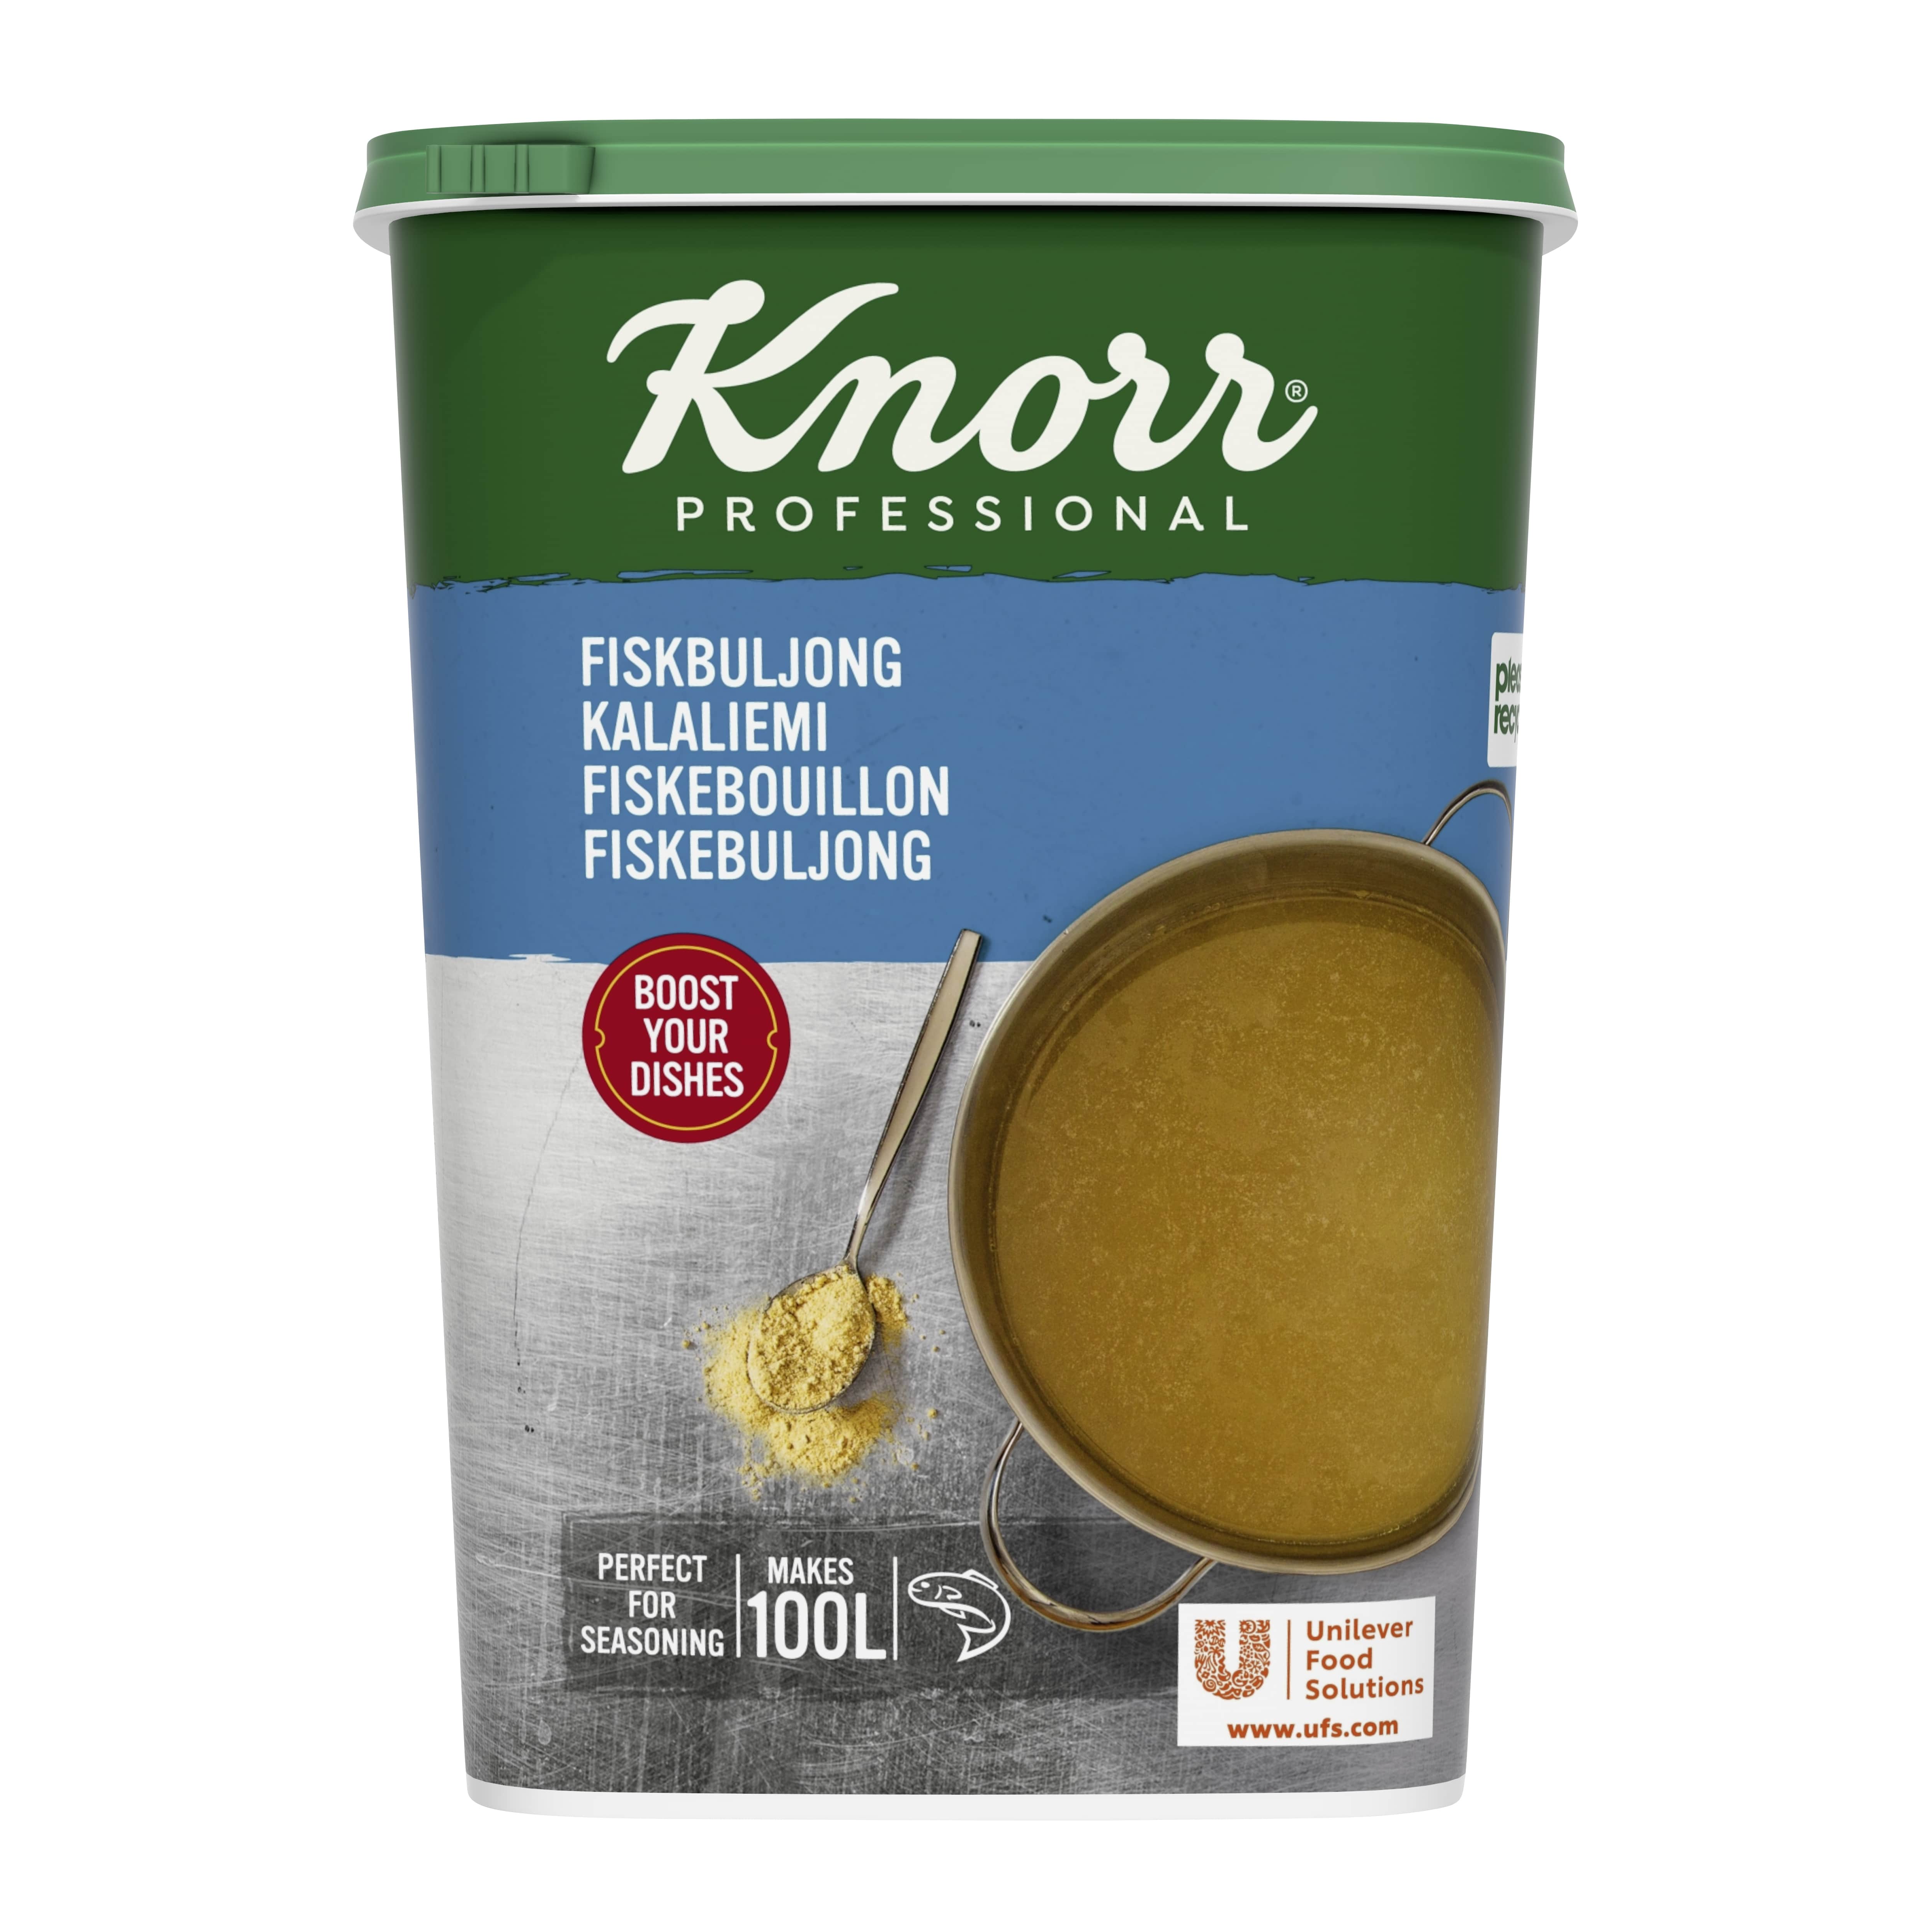 Knorr Kalaliemi 1,5 kg / 100 L - 